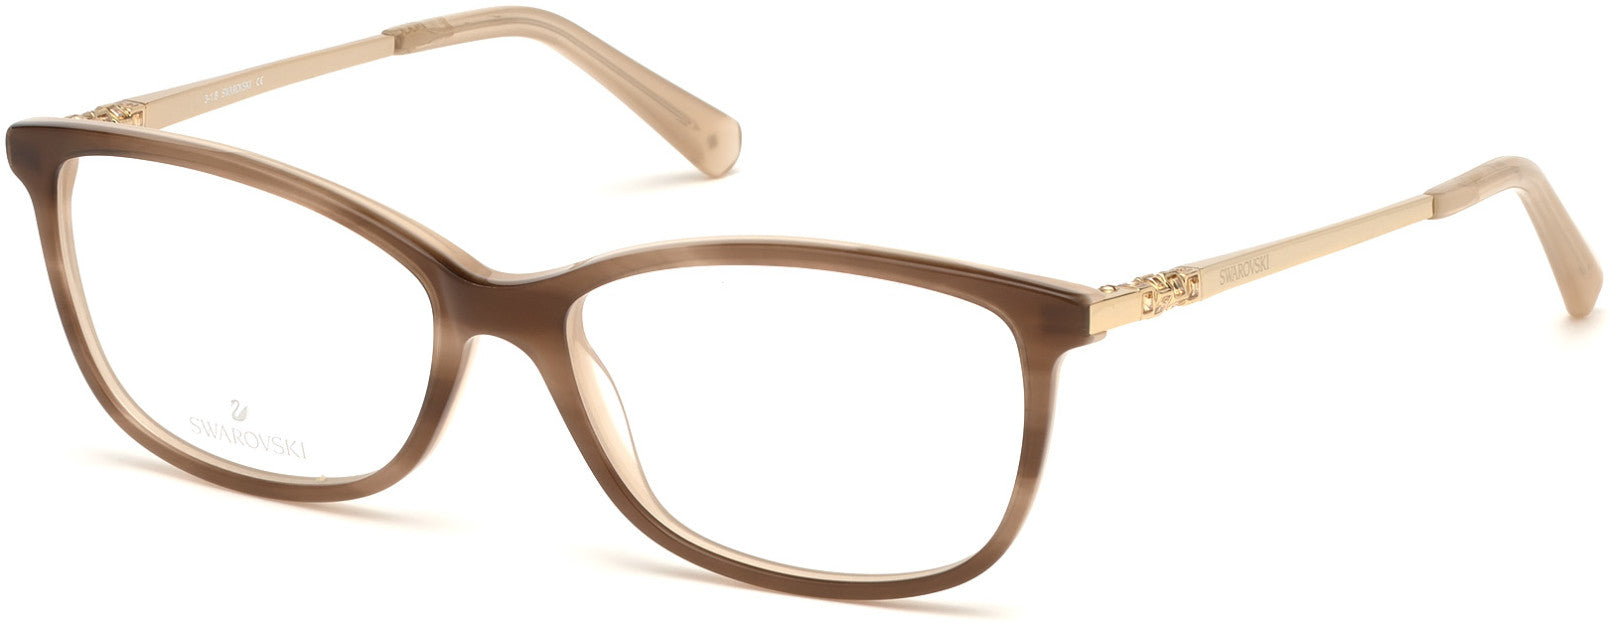 Swarovski SK5285 Rectangular Eyeglasses 047-047 - Light Brown